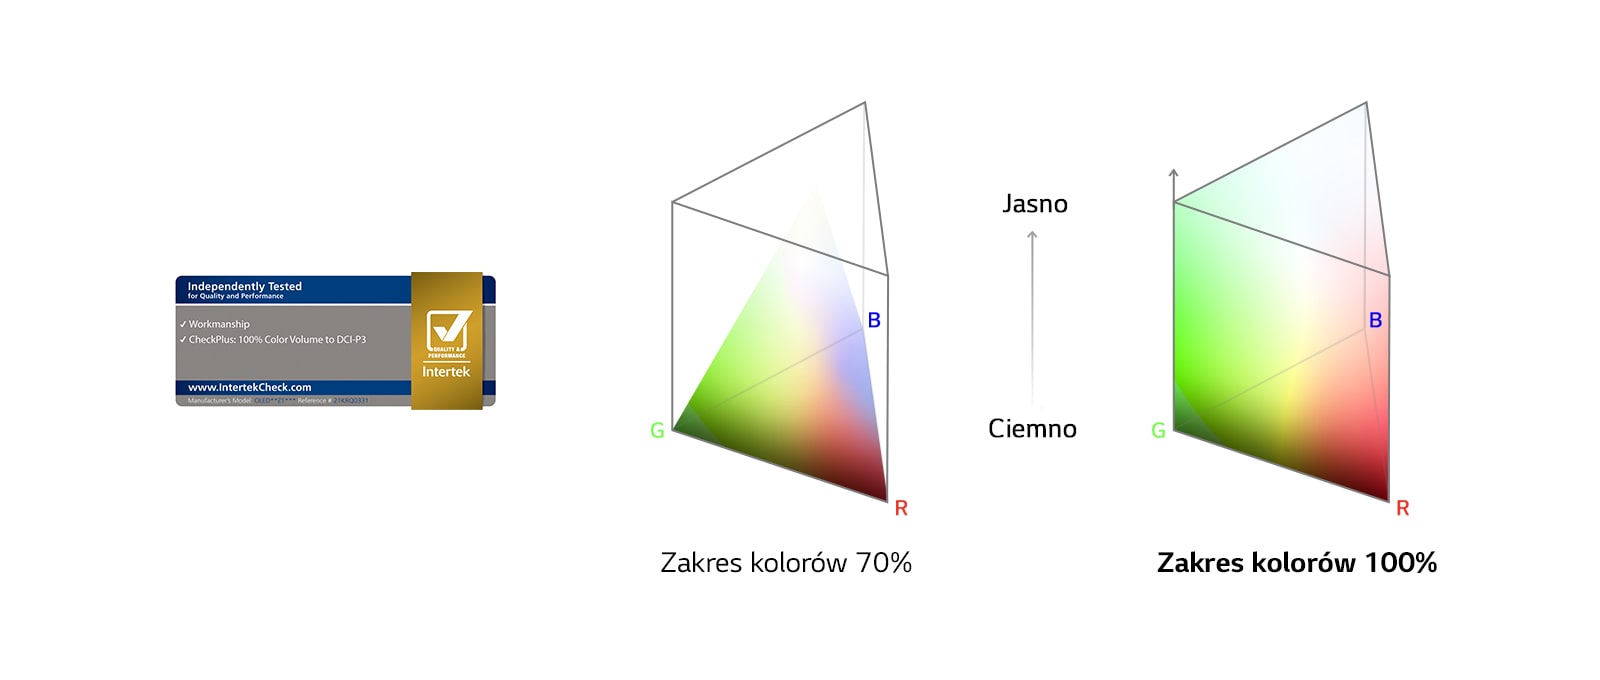 Logo 100% Color Volume con certificato Intertek.  Grafico di confronto del 70% e del 100% della gamma di colori.